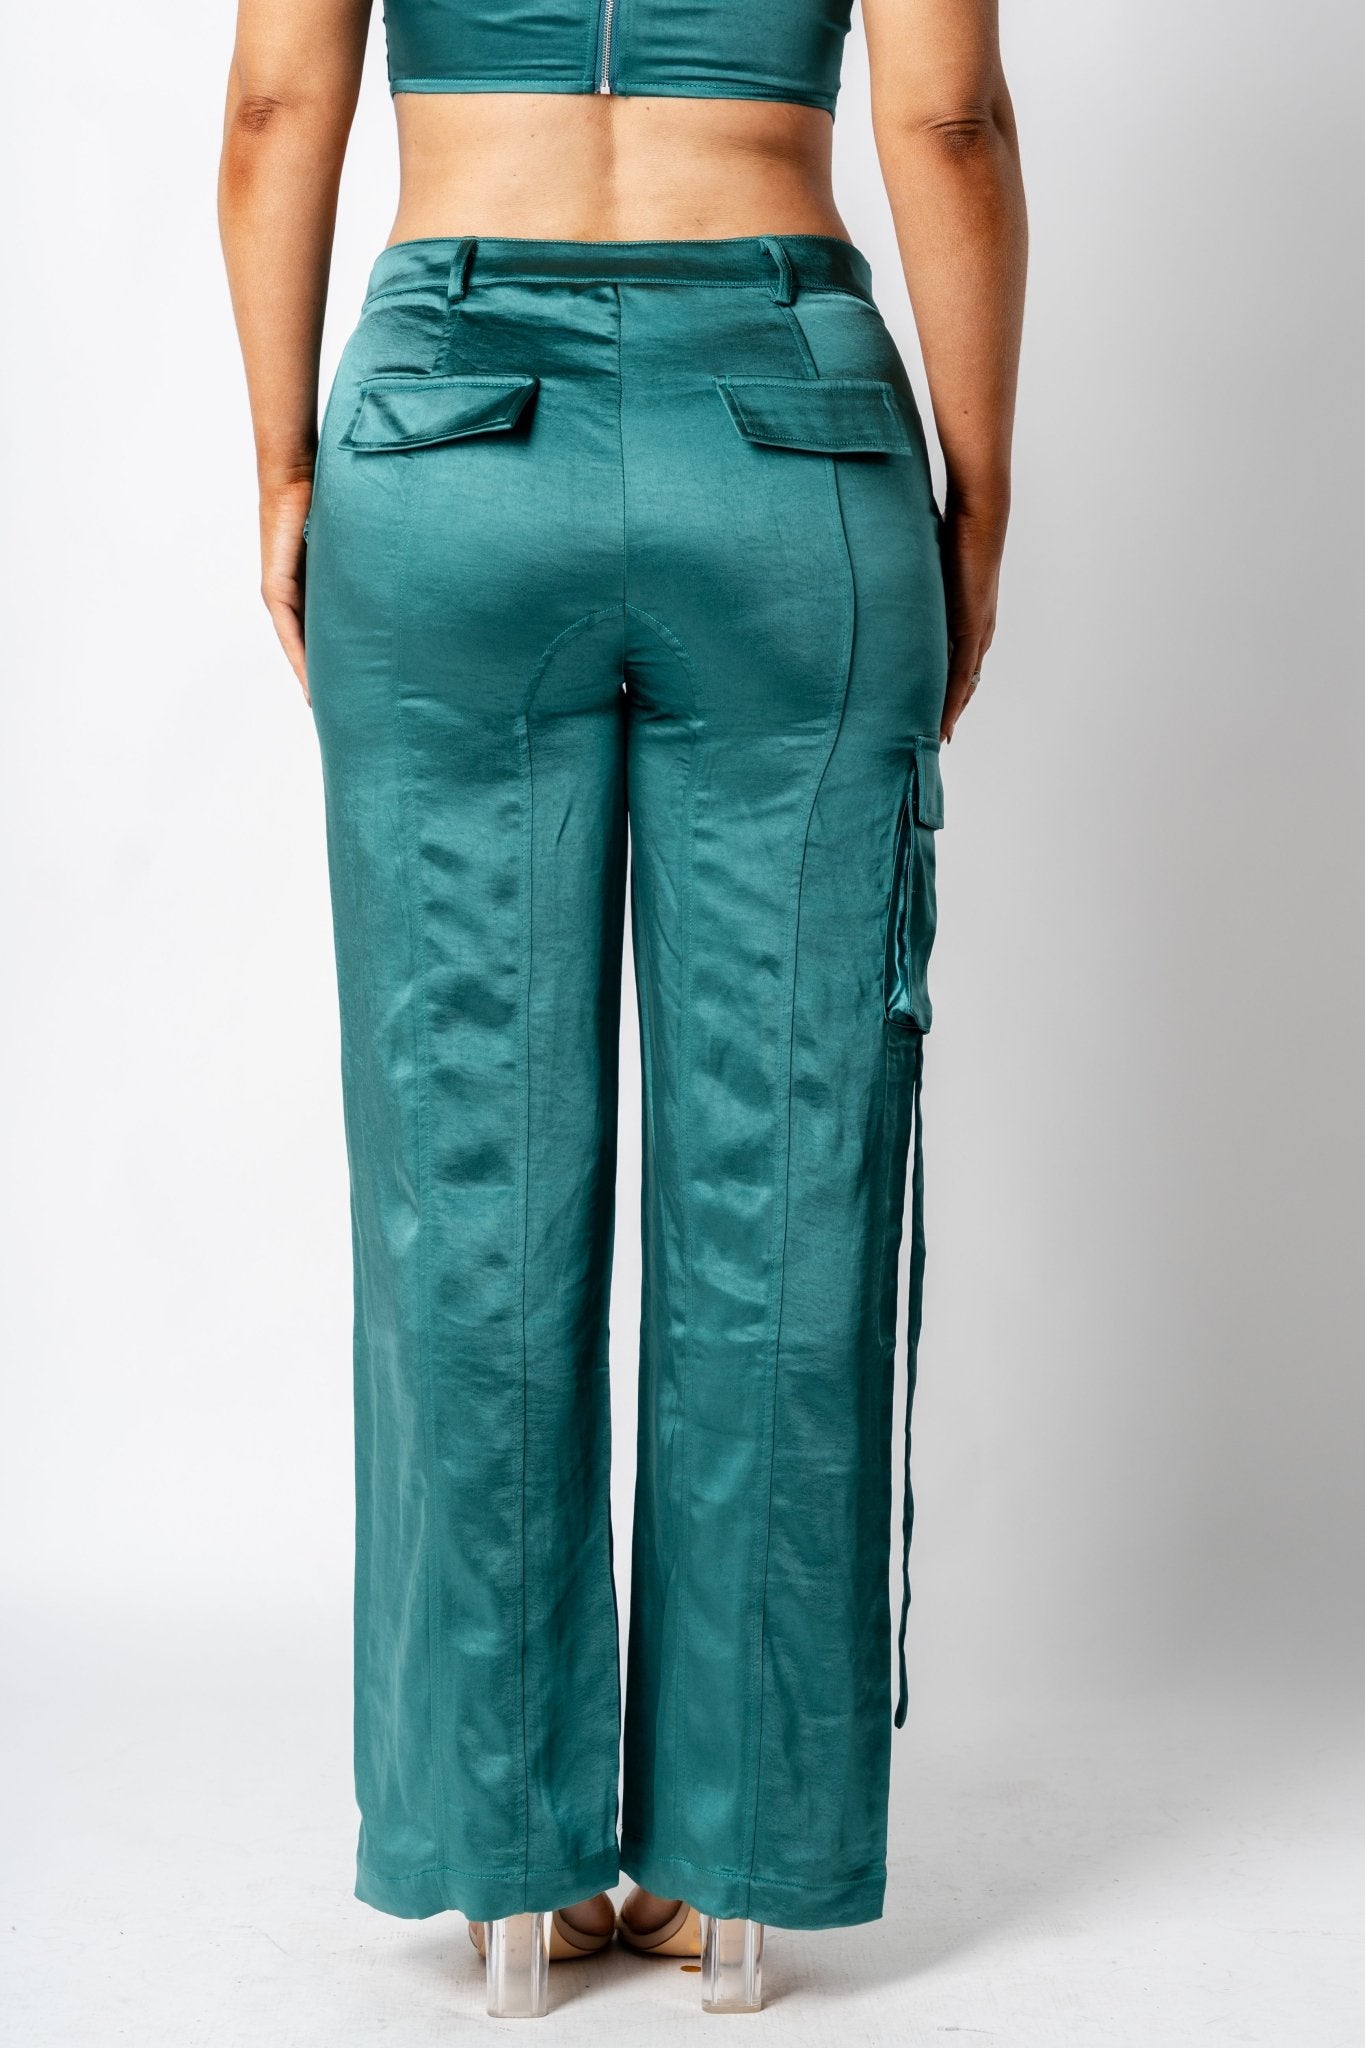 Satin wide leg cargo pants forest green | Lush Fashion Lounge: women's boutique pants, boutique women's pants, affordable boutique pants, women's fashion pants